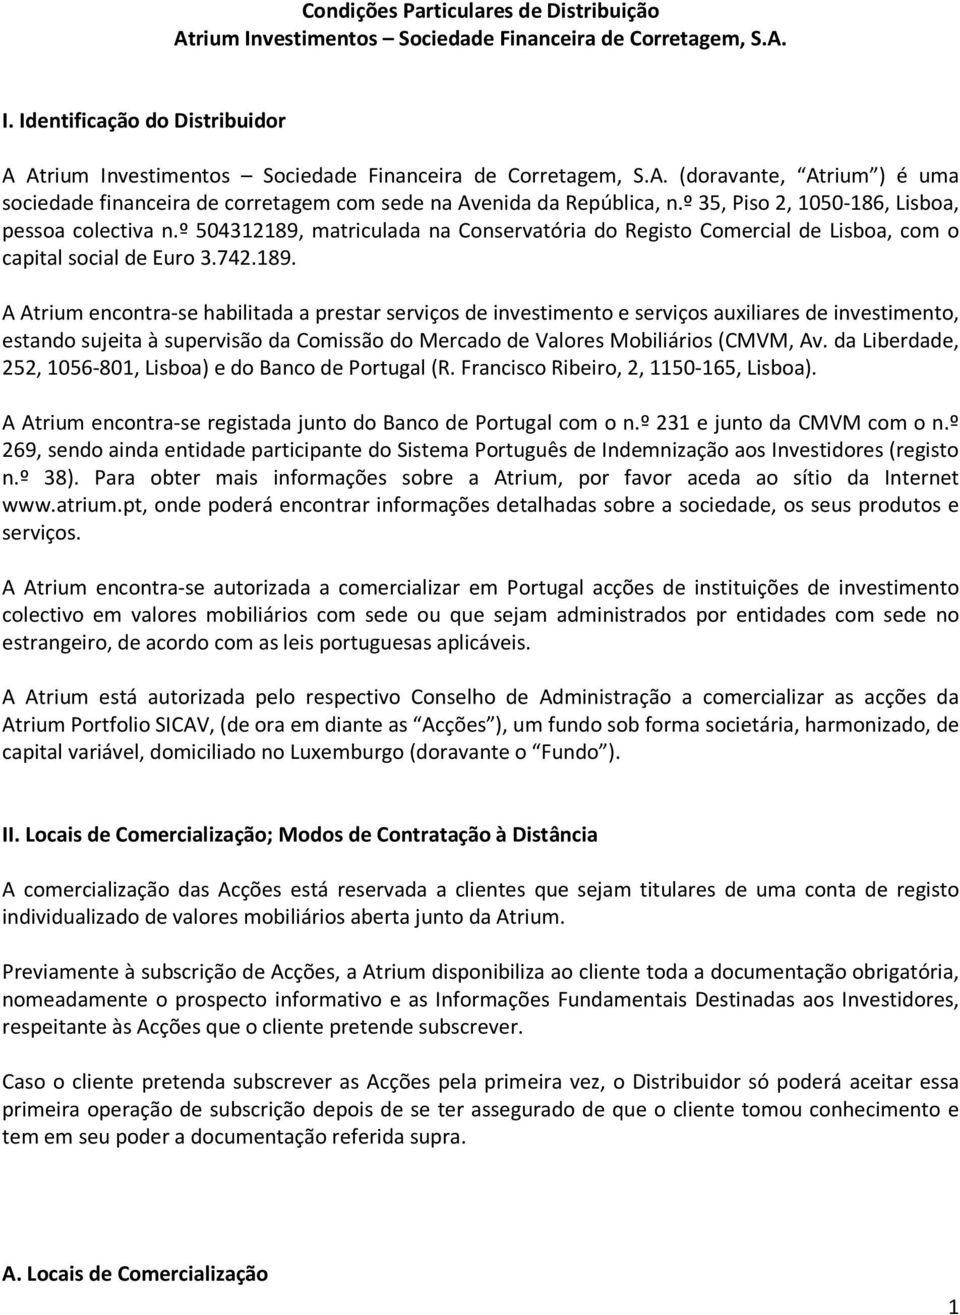 matriculada na Conservatória do Registo Comercial de Lisboa, com o capital social de Euro 3.742.189.